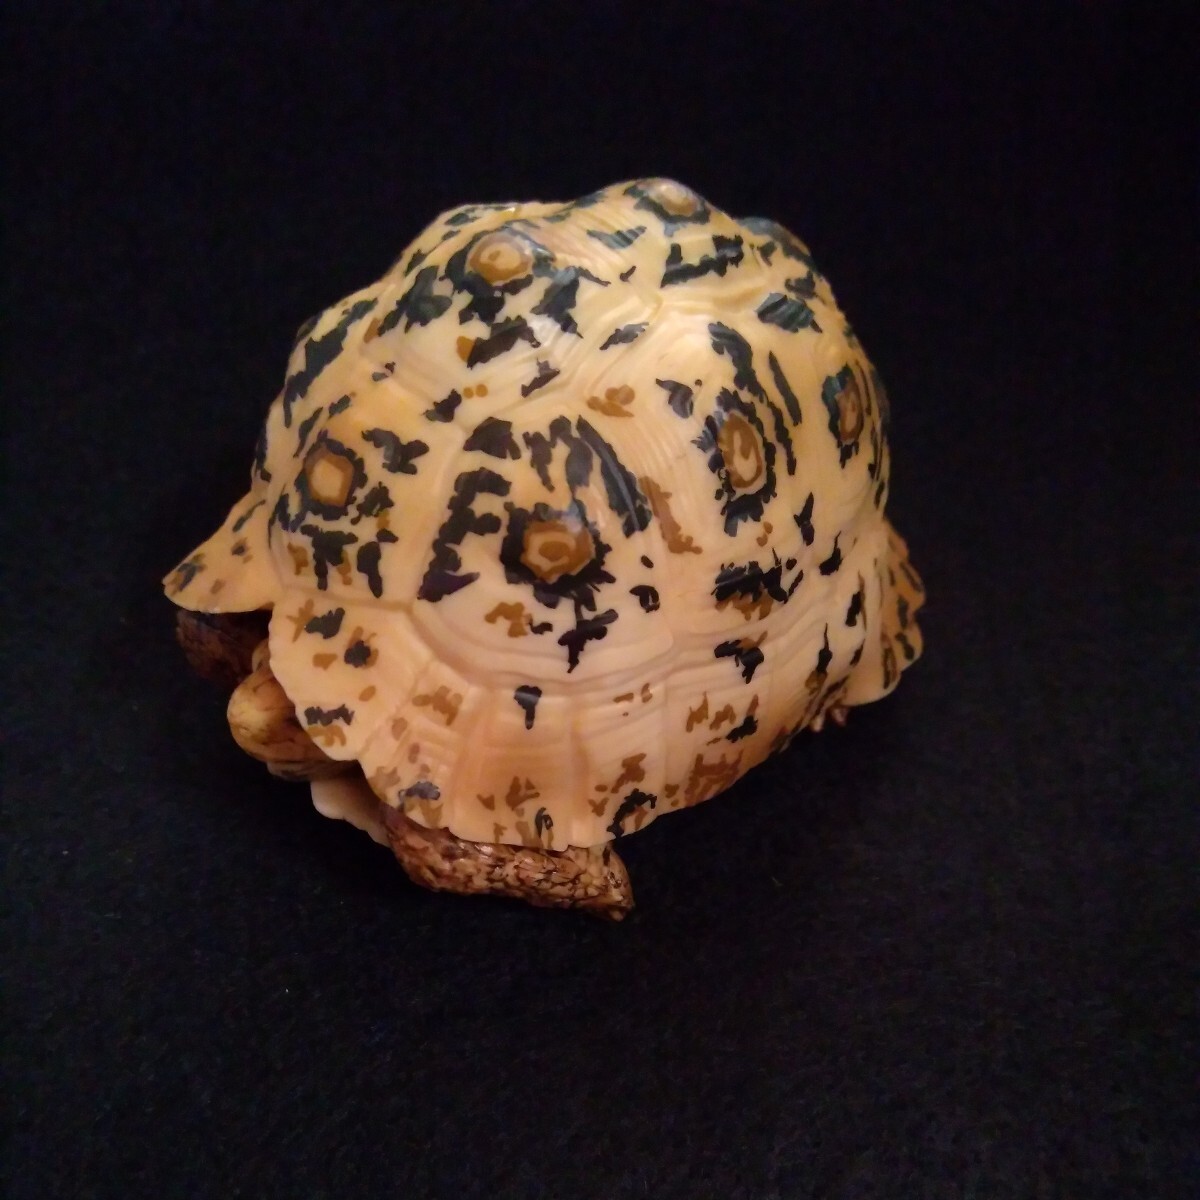  распроданный товар Bandai BANDAI. кимоно большой иллюстрированная книга черепаха so Мали a леопард mongame(. body ) черепаха фигурка 